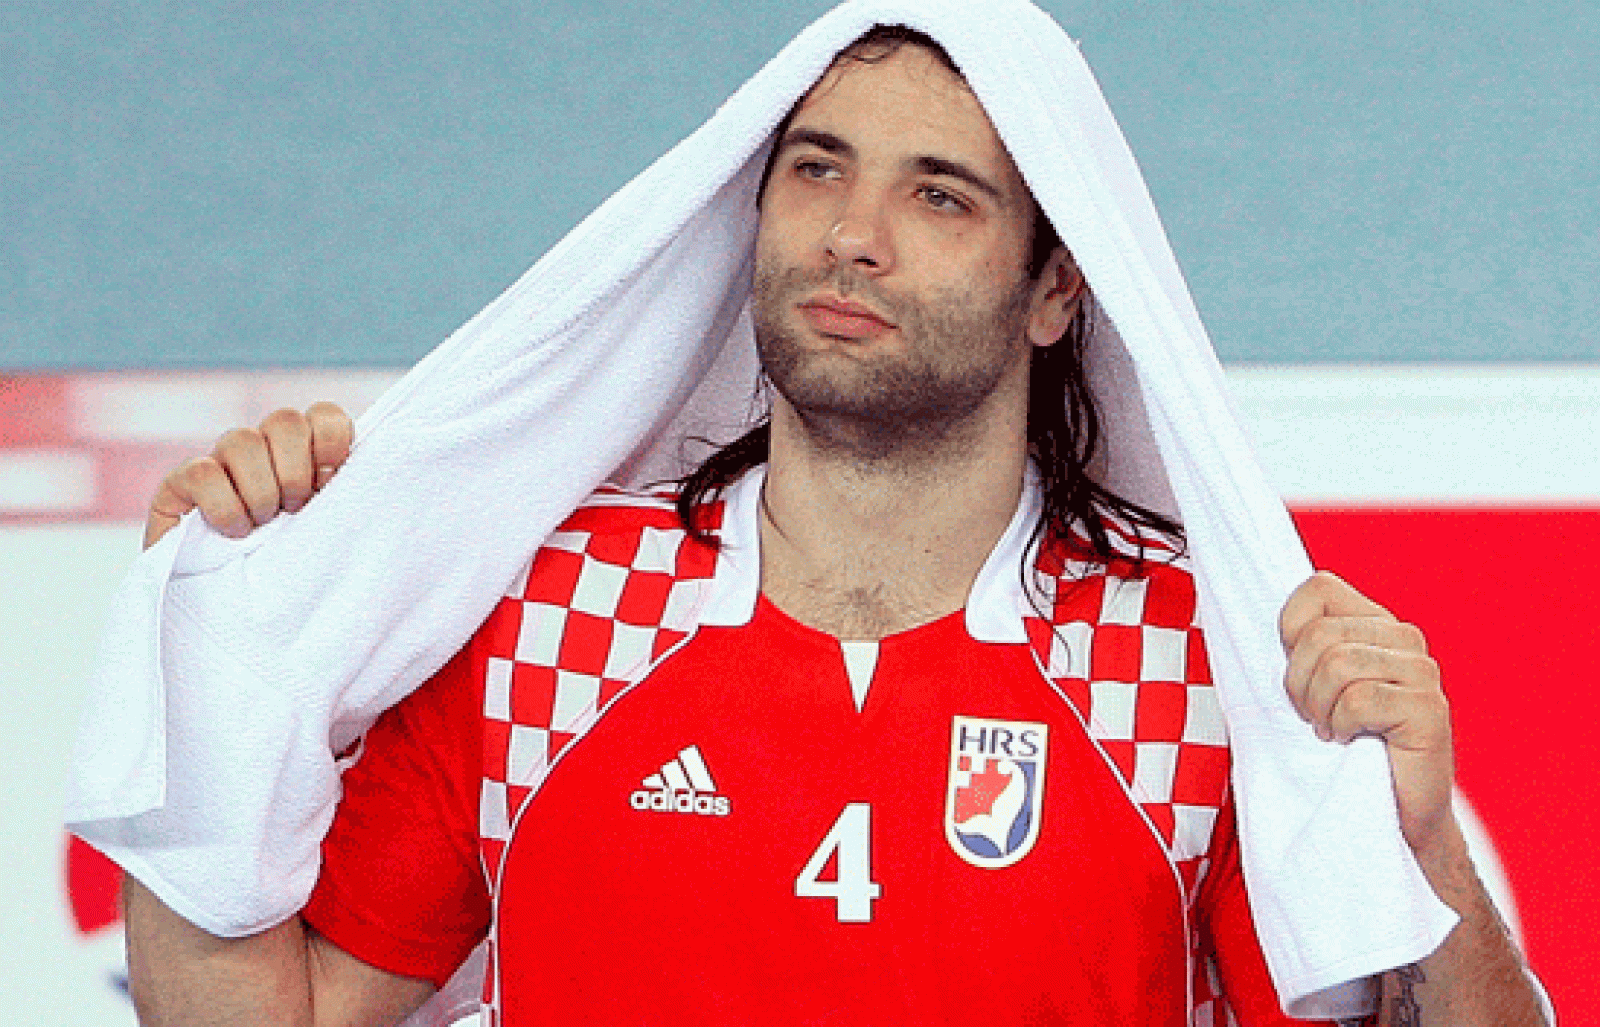 Los croatas perdierono por 24-19 en la final del Mundial ed Balonmano que se disputaba en su país. Igor Vori, llegó a amenazar el árbitro con un pelotazo, impotente por la derrrota.